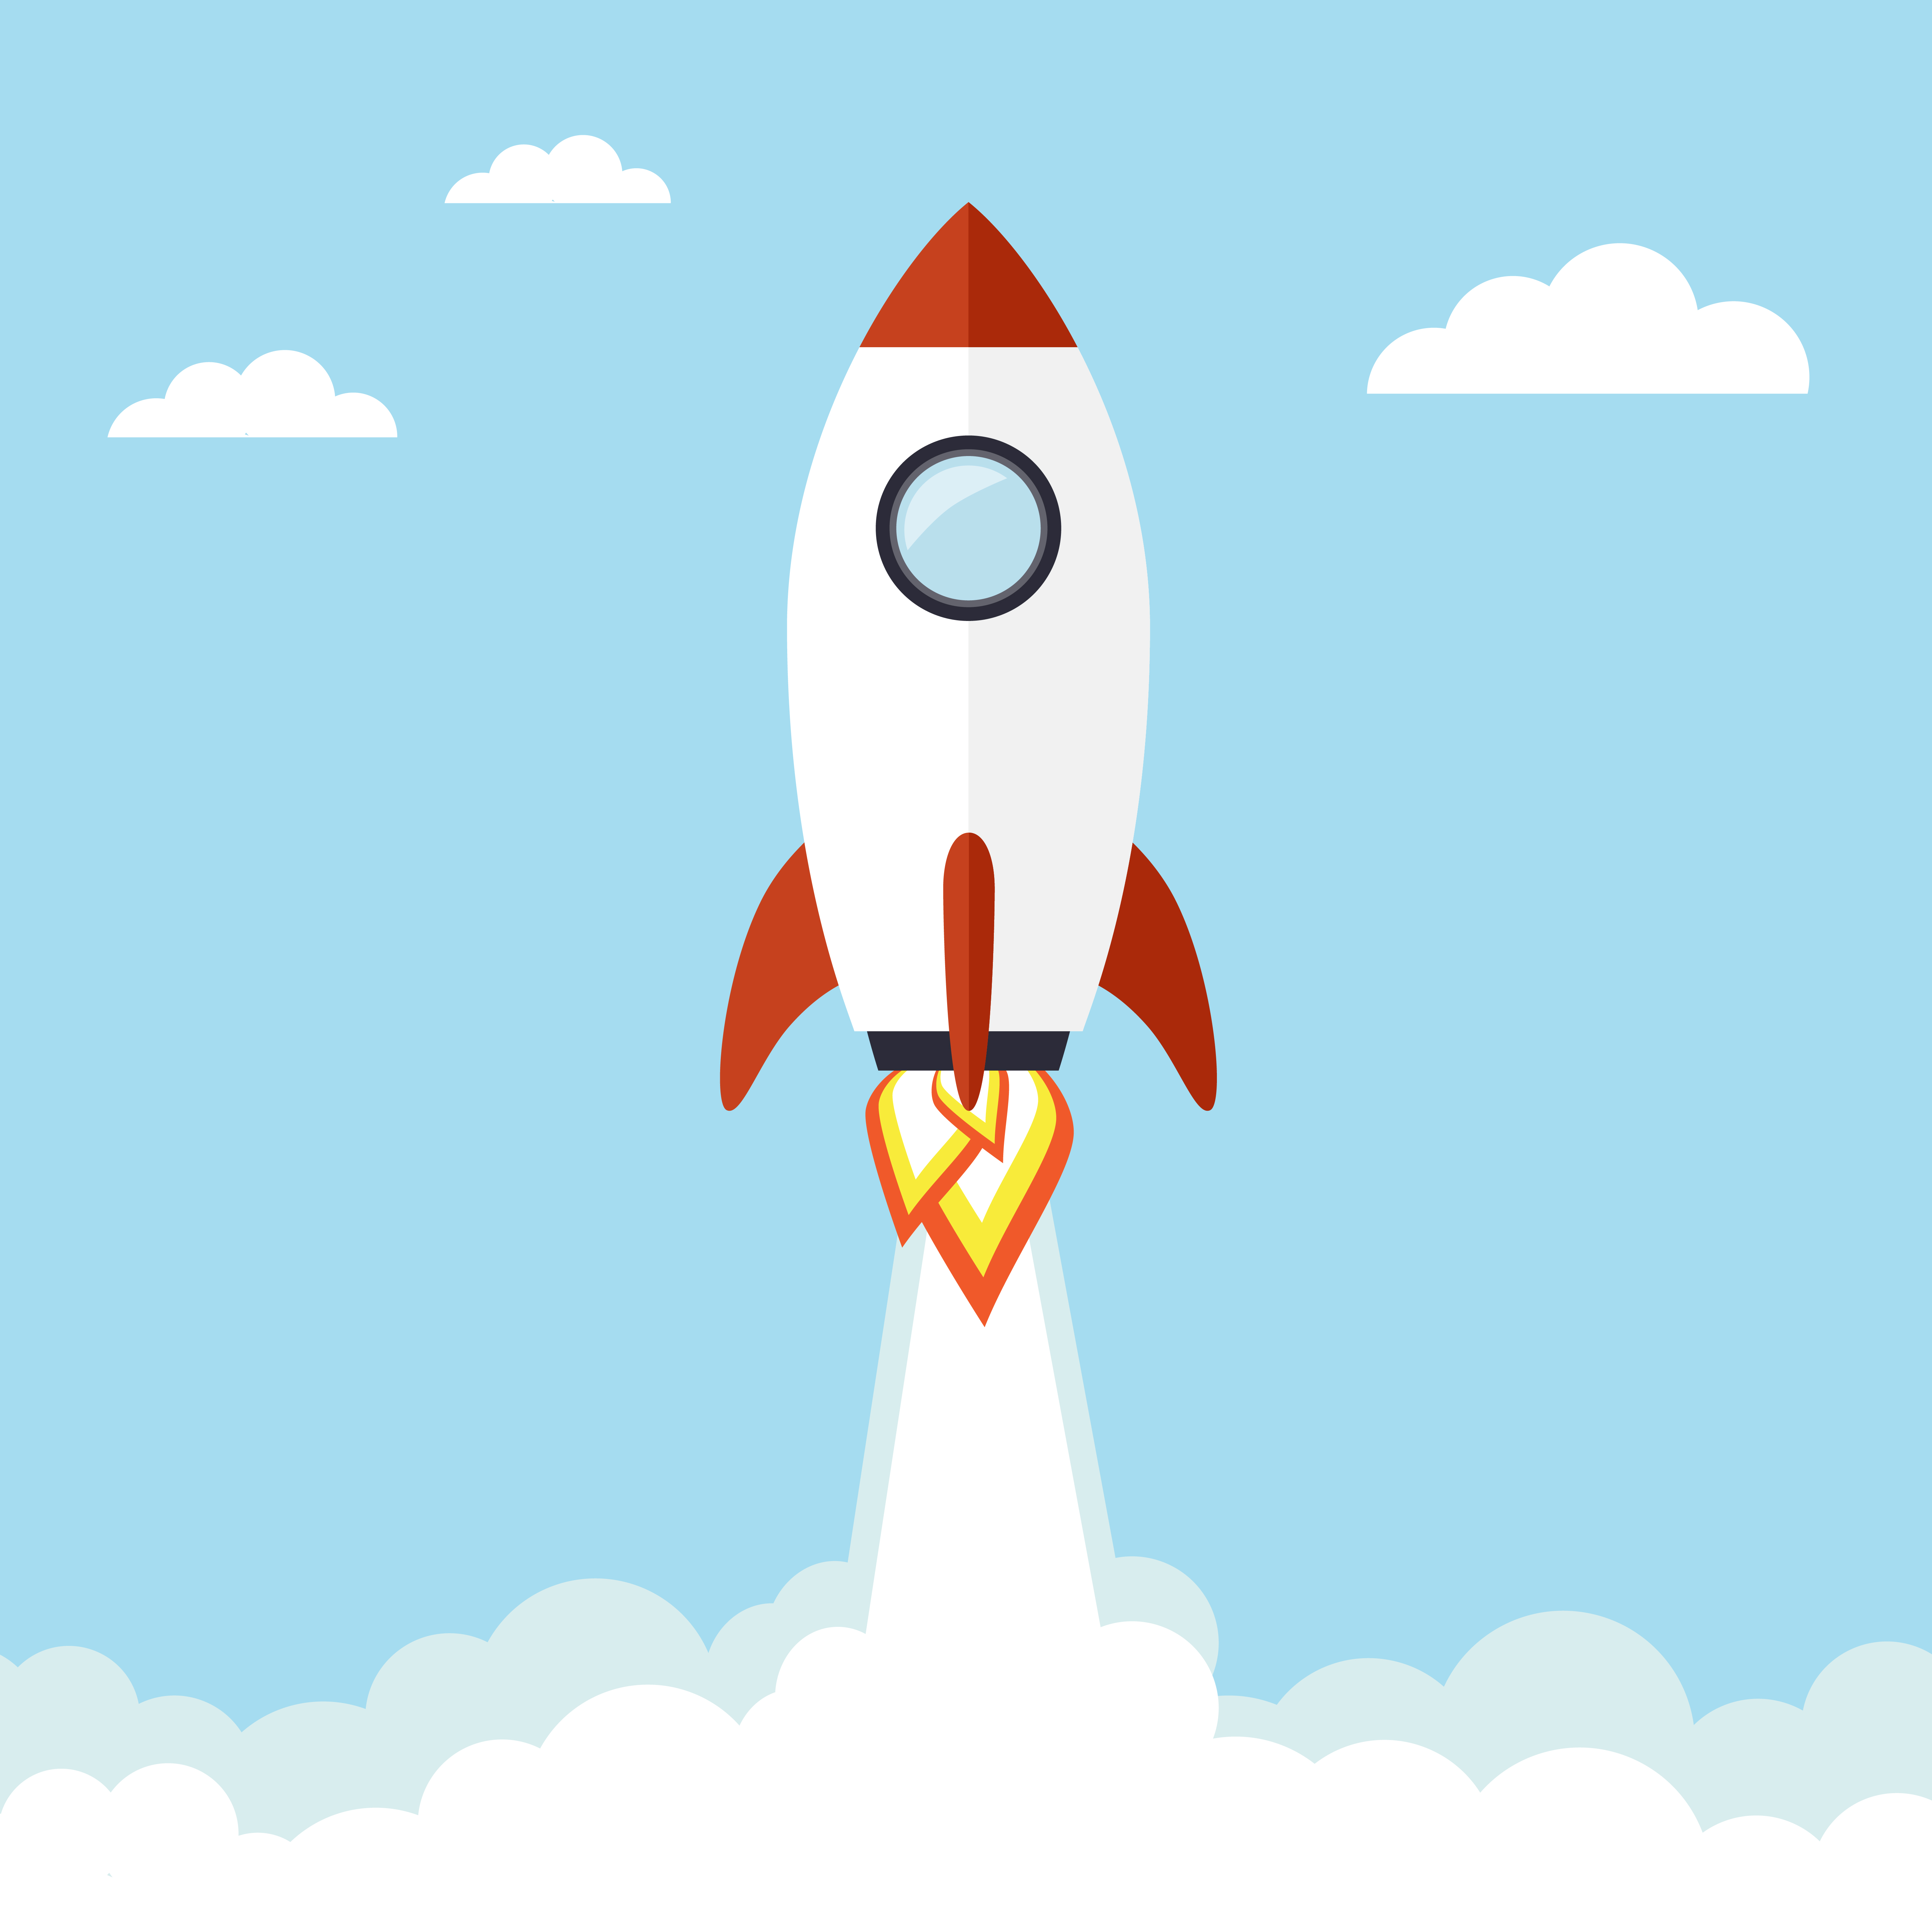 Rocket illustration Download Free Vectors, Clipart